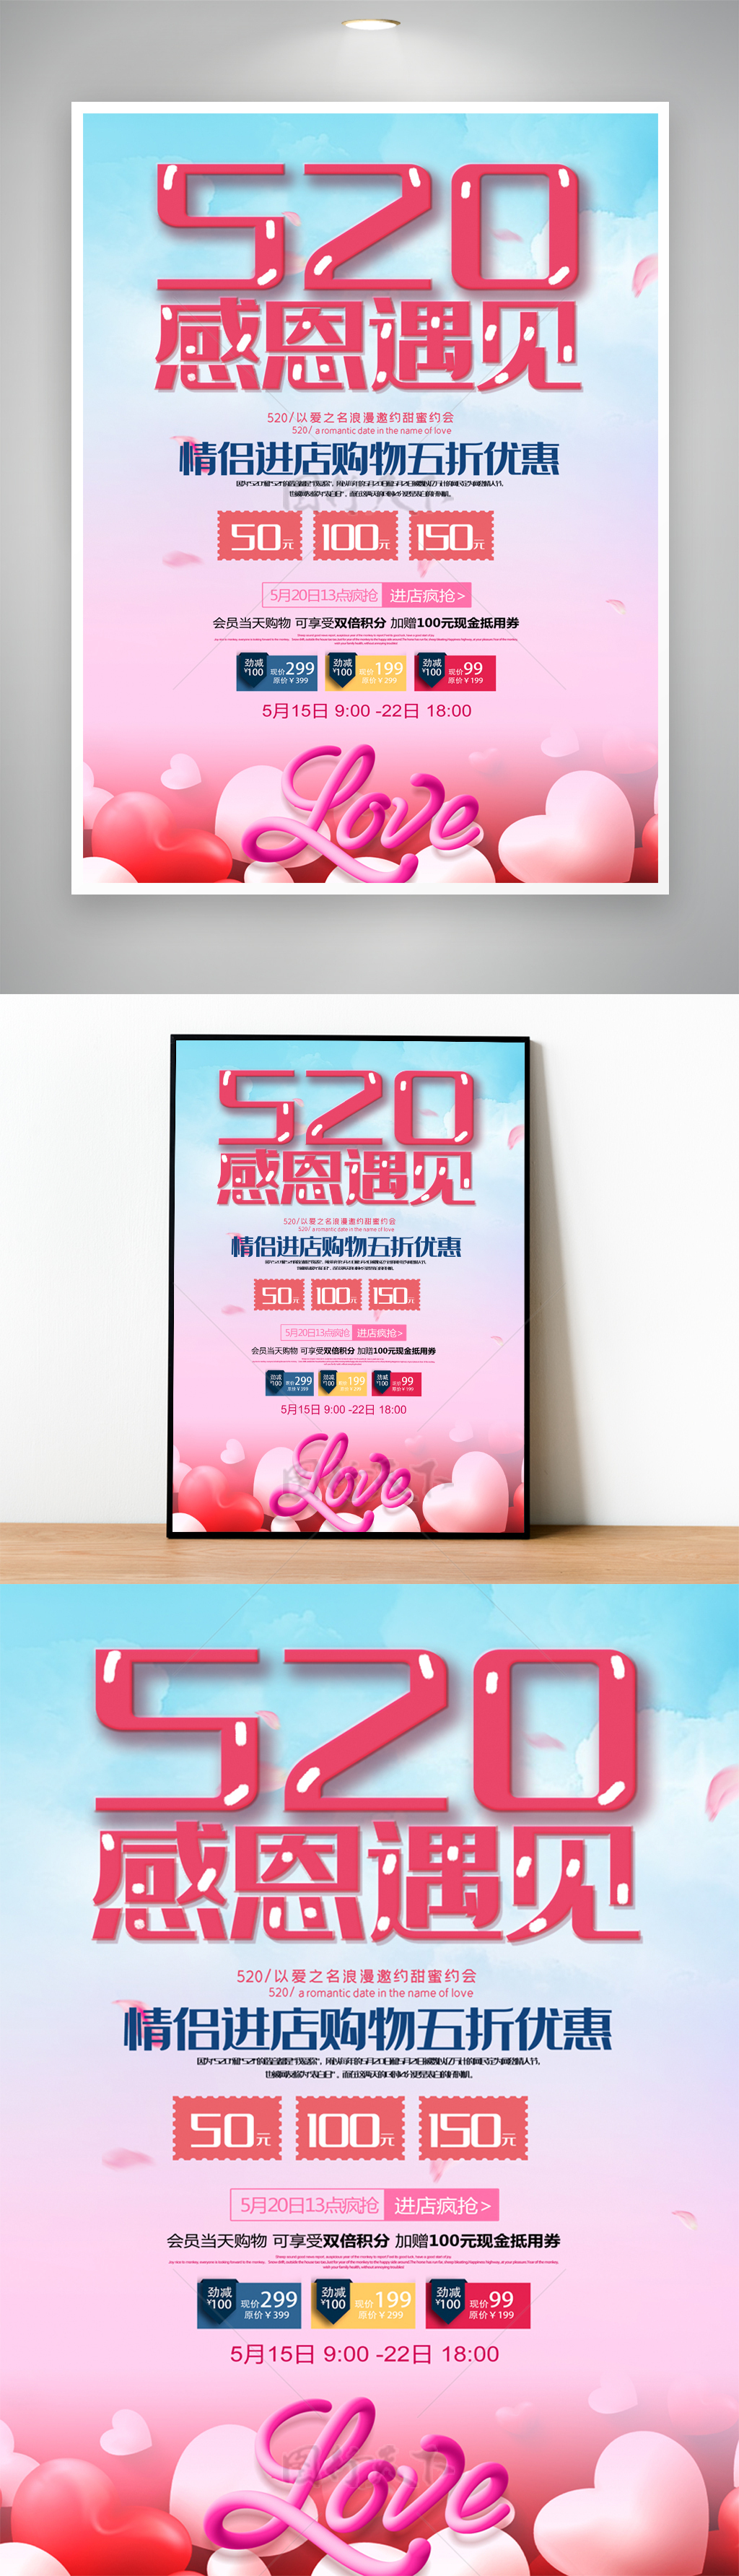 520感恩遇见情人节活动主题促销海报